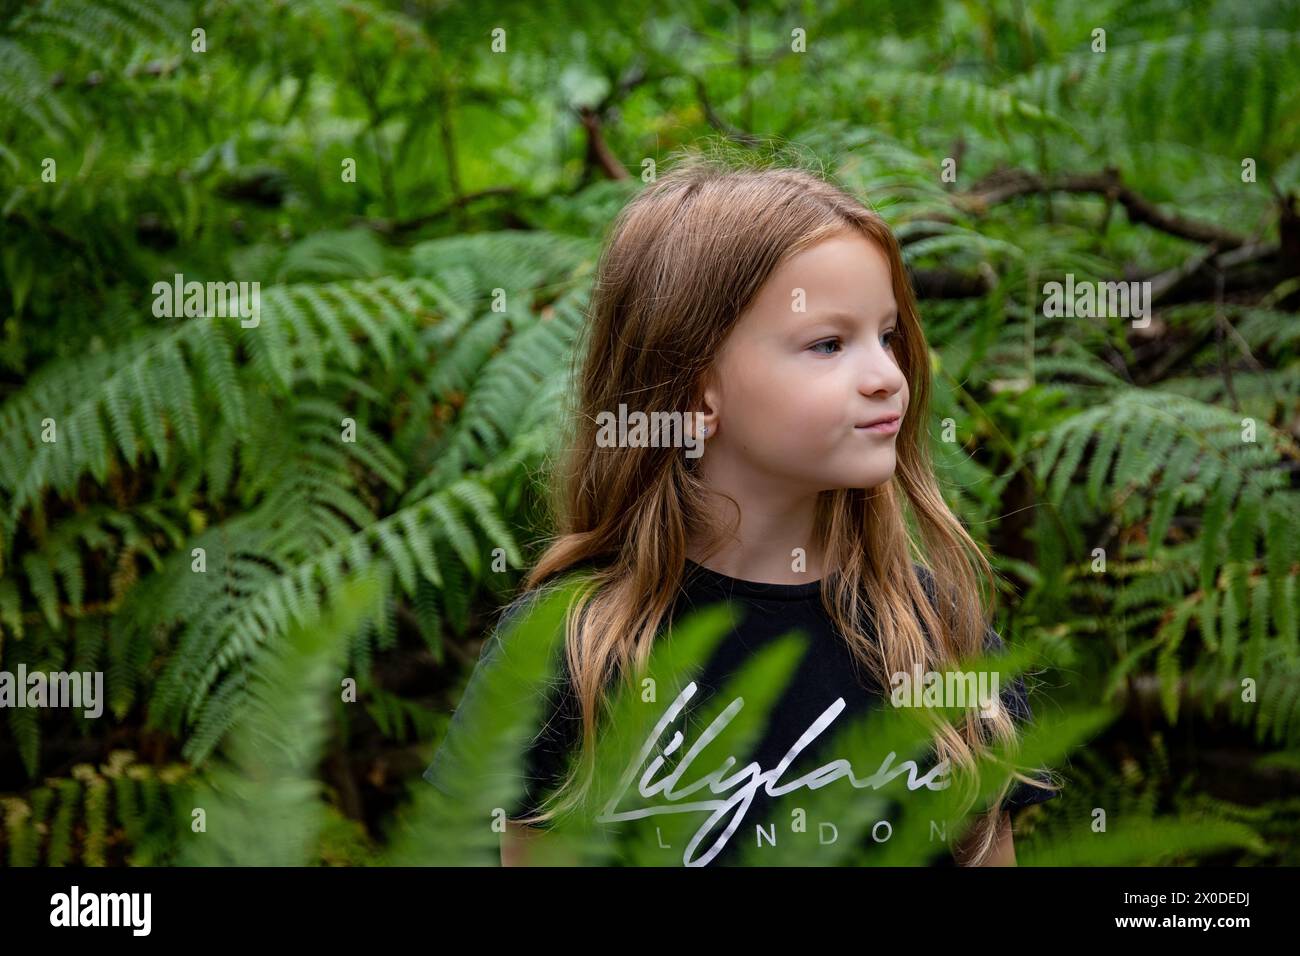 Bella ragazza con i capelli lunghi nella foresta di felci verde Foto Stock